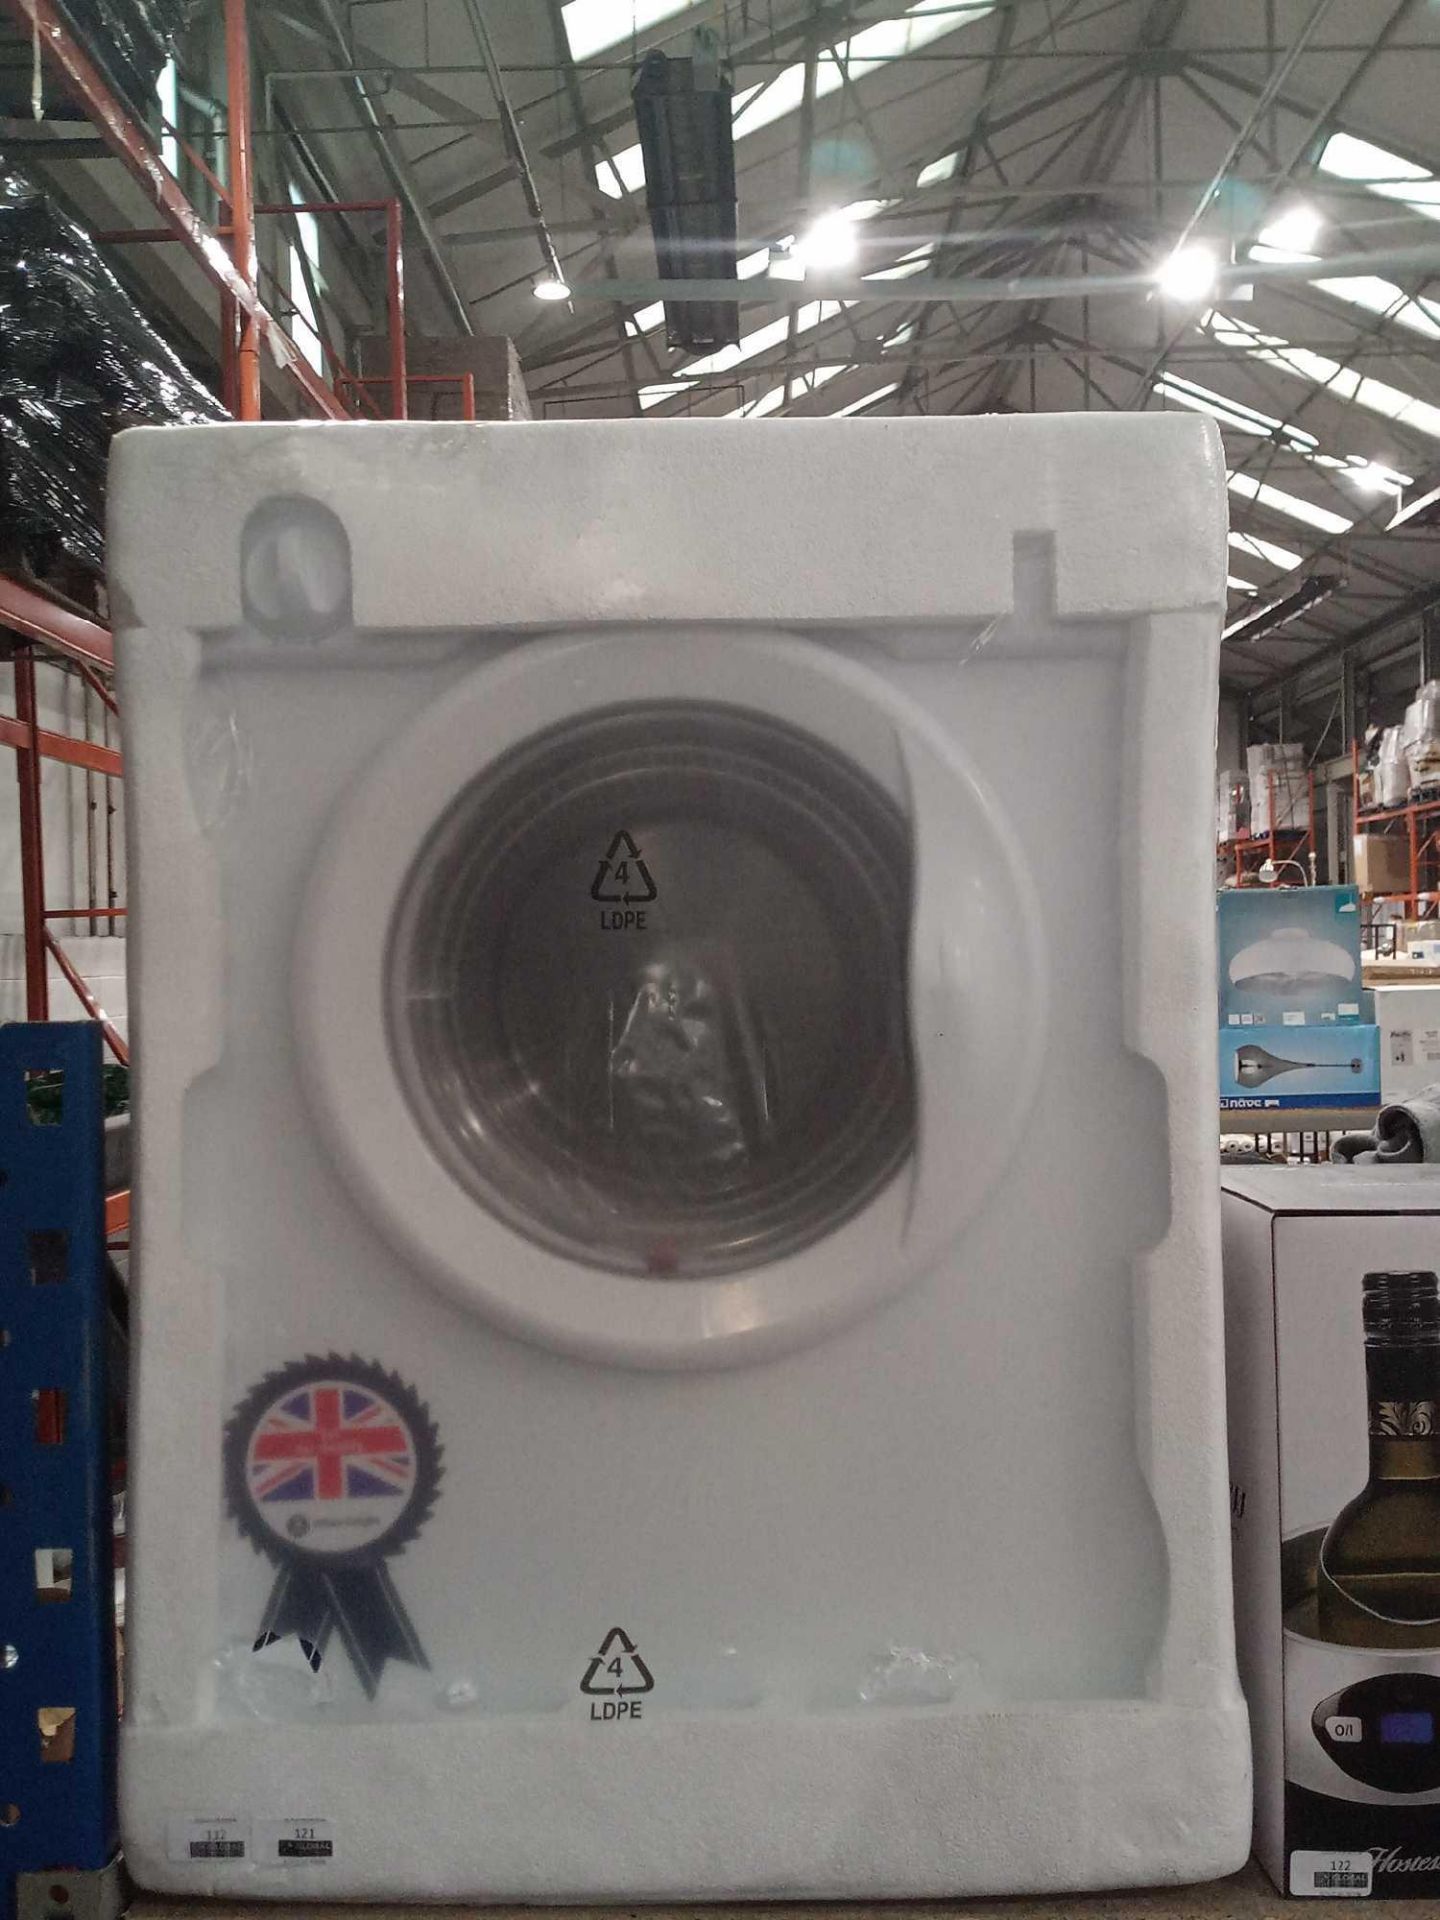 Rrp £180 White Knight Grade B 3Kg Tumble Dryer